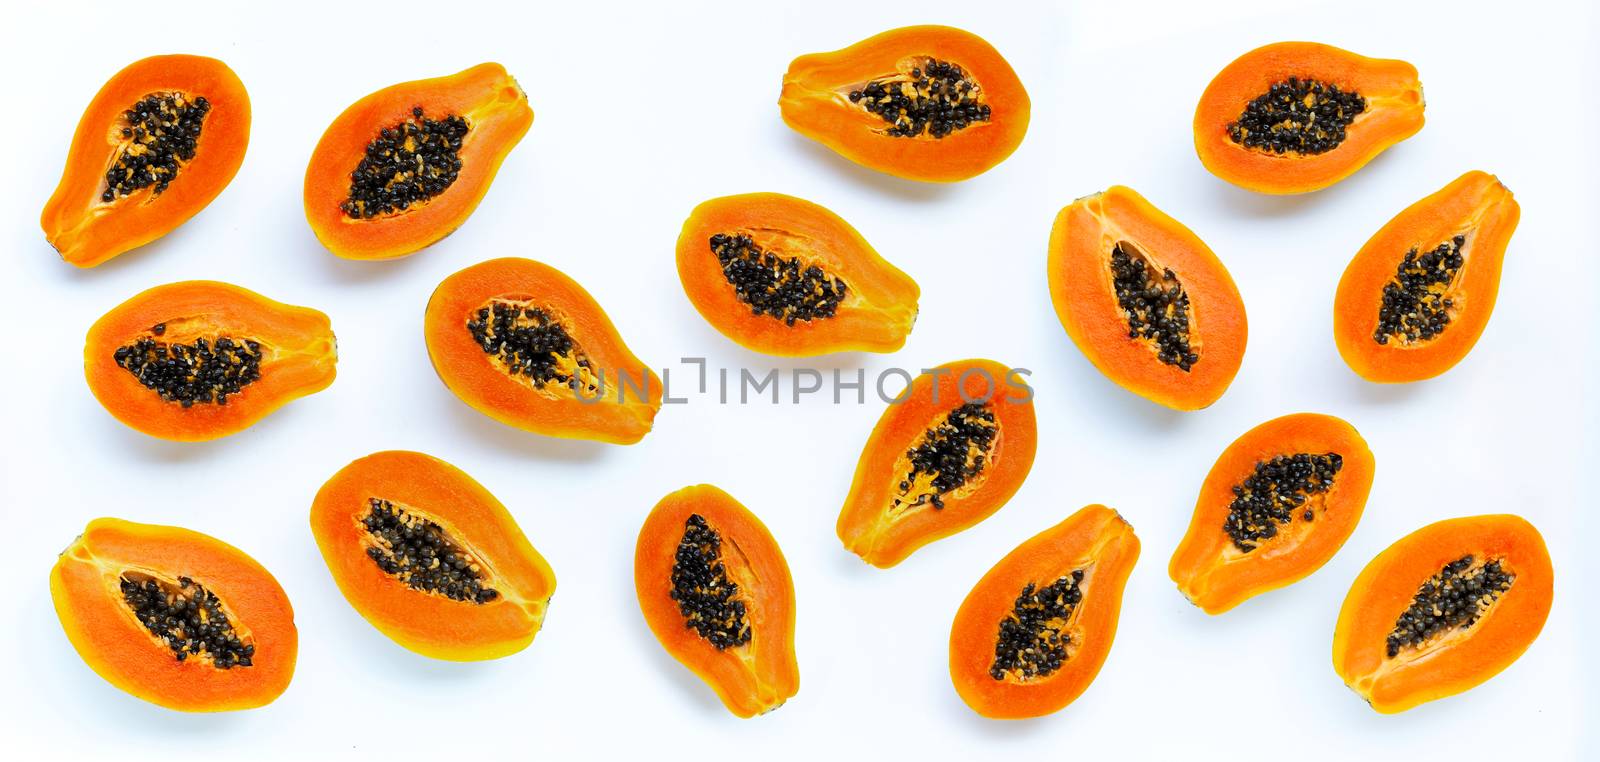 Papaya fruit on white background. by Bowonpat